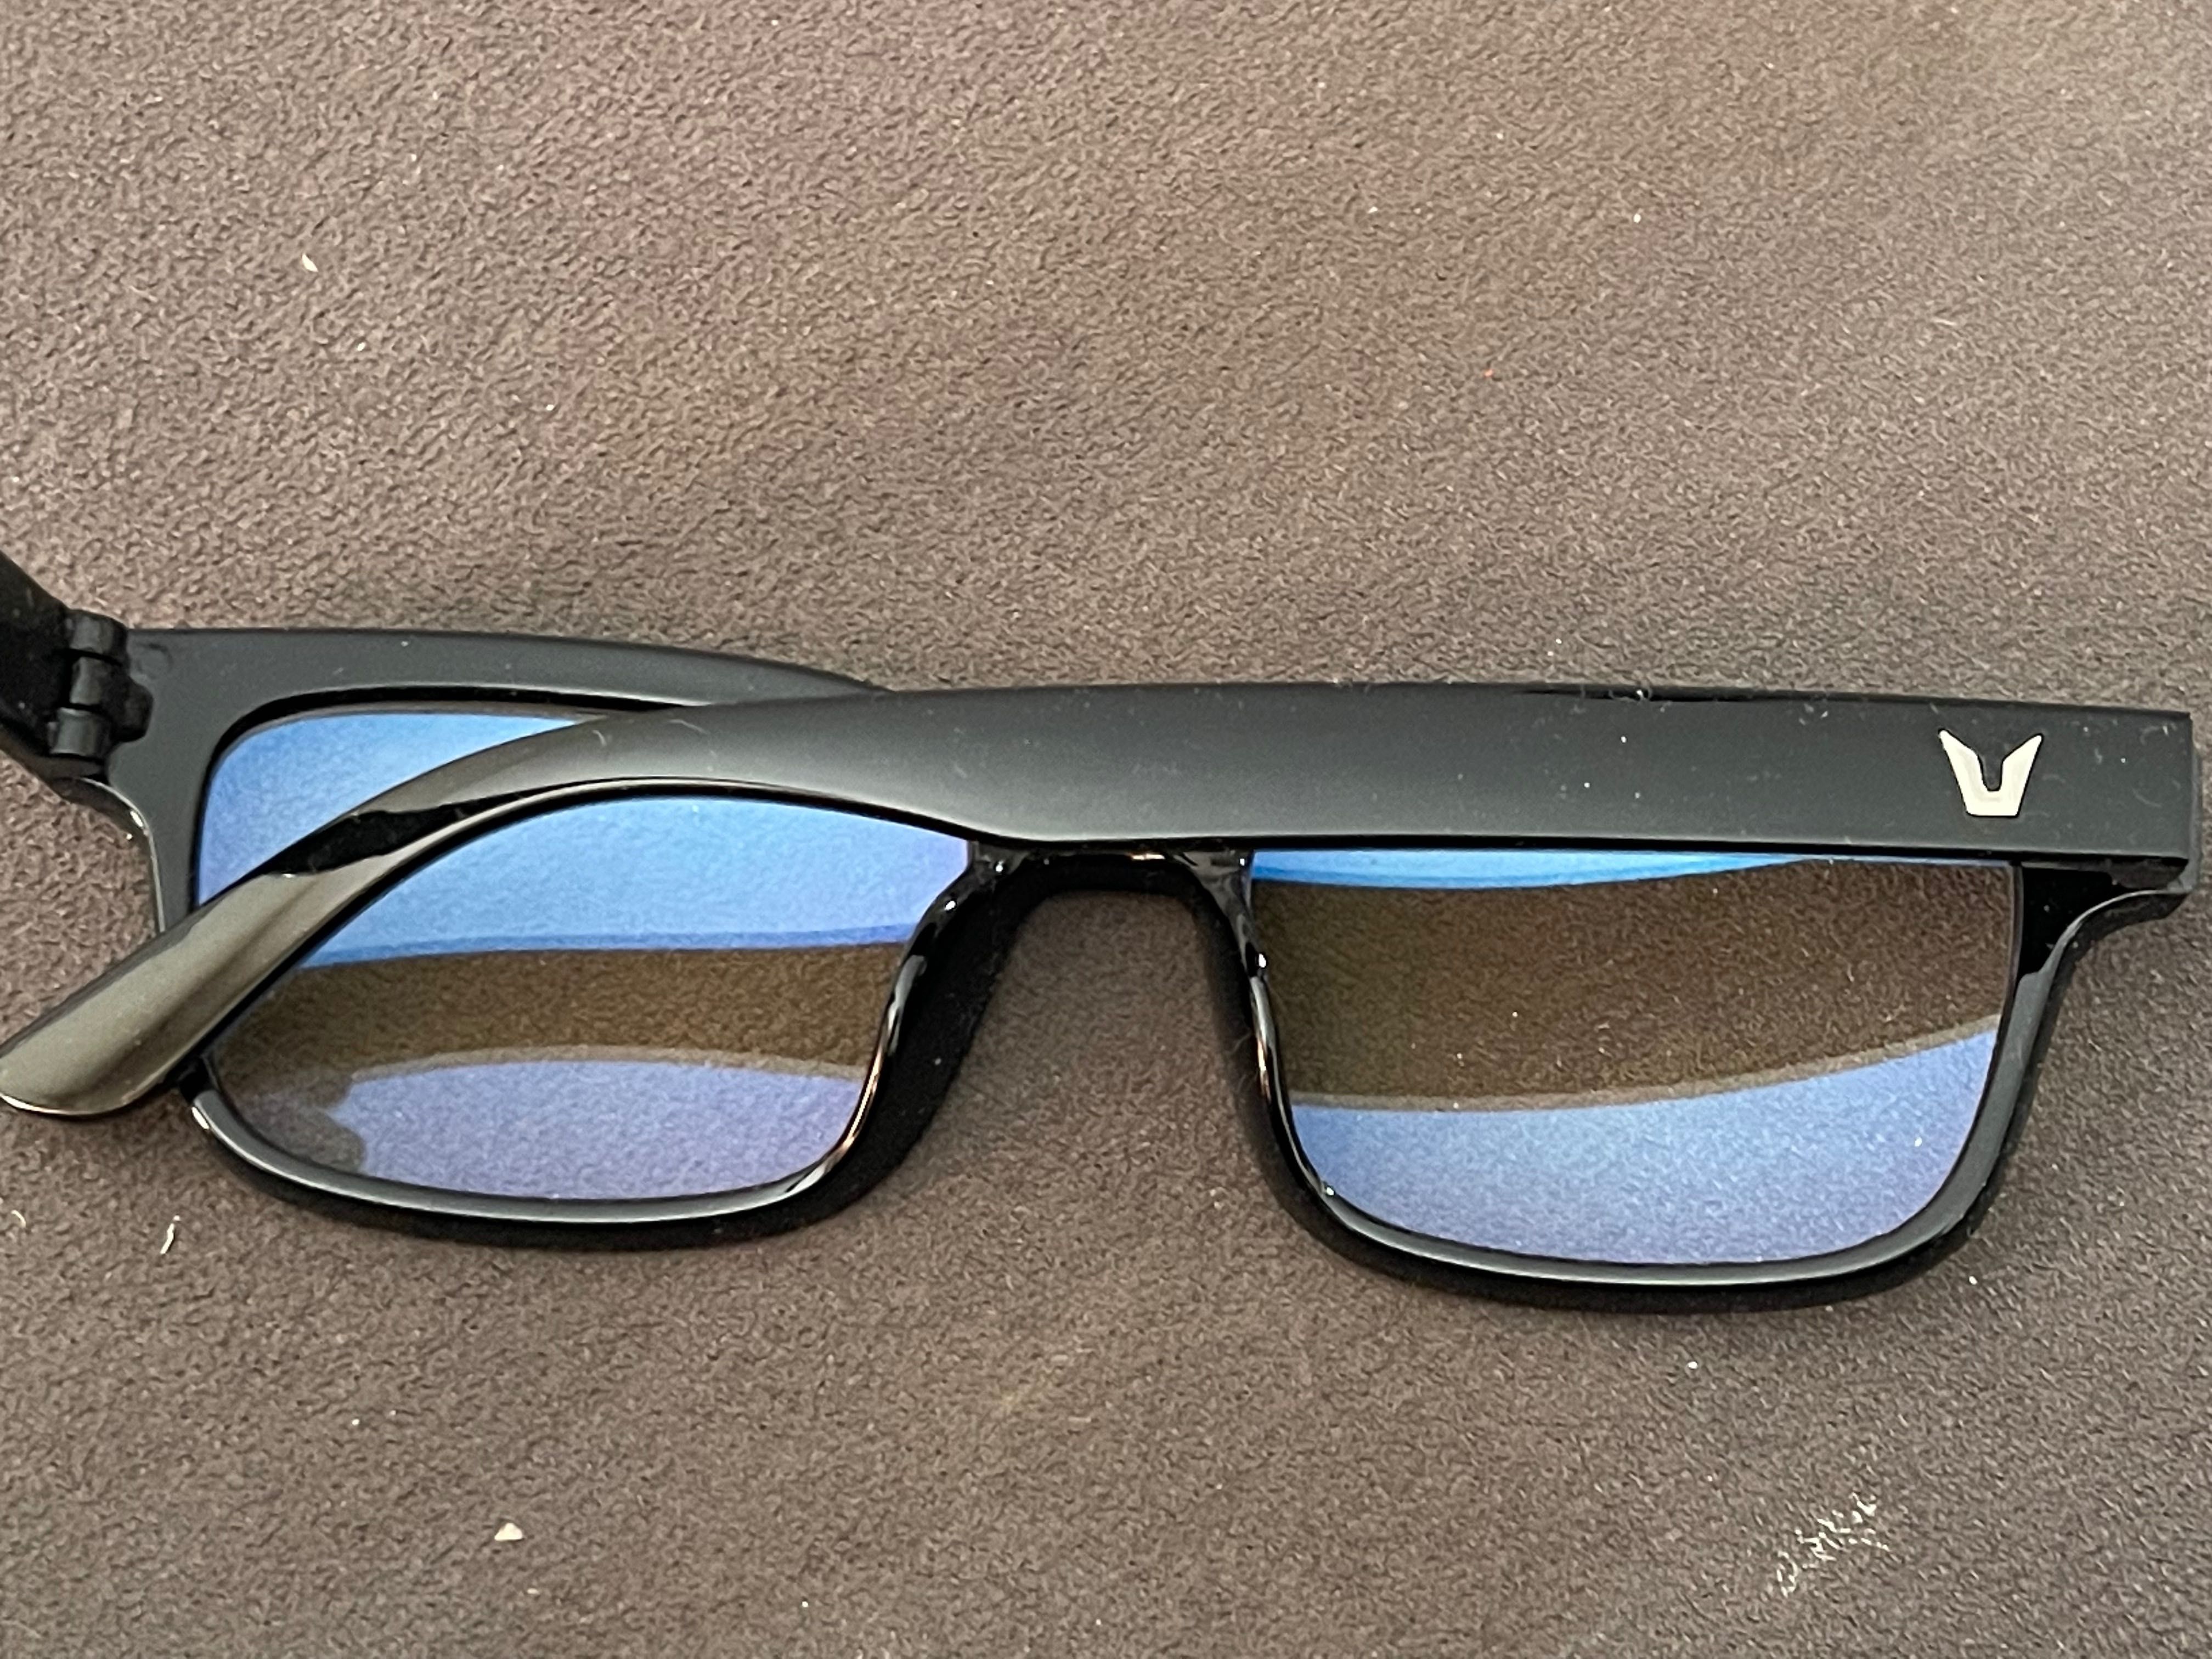 Okulary zerówki z filtrem czarne nowe - wstaw swoje szkła